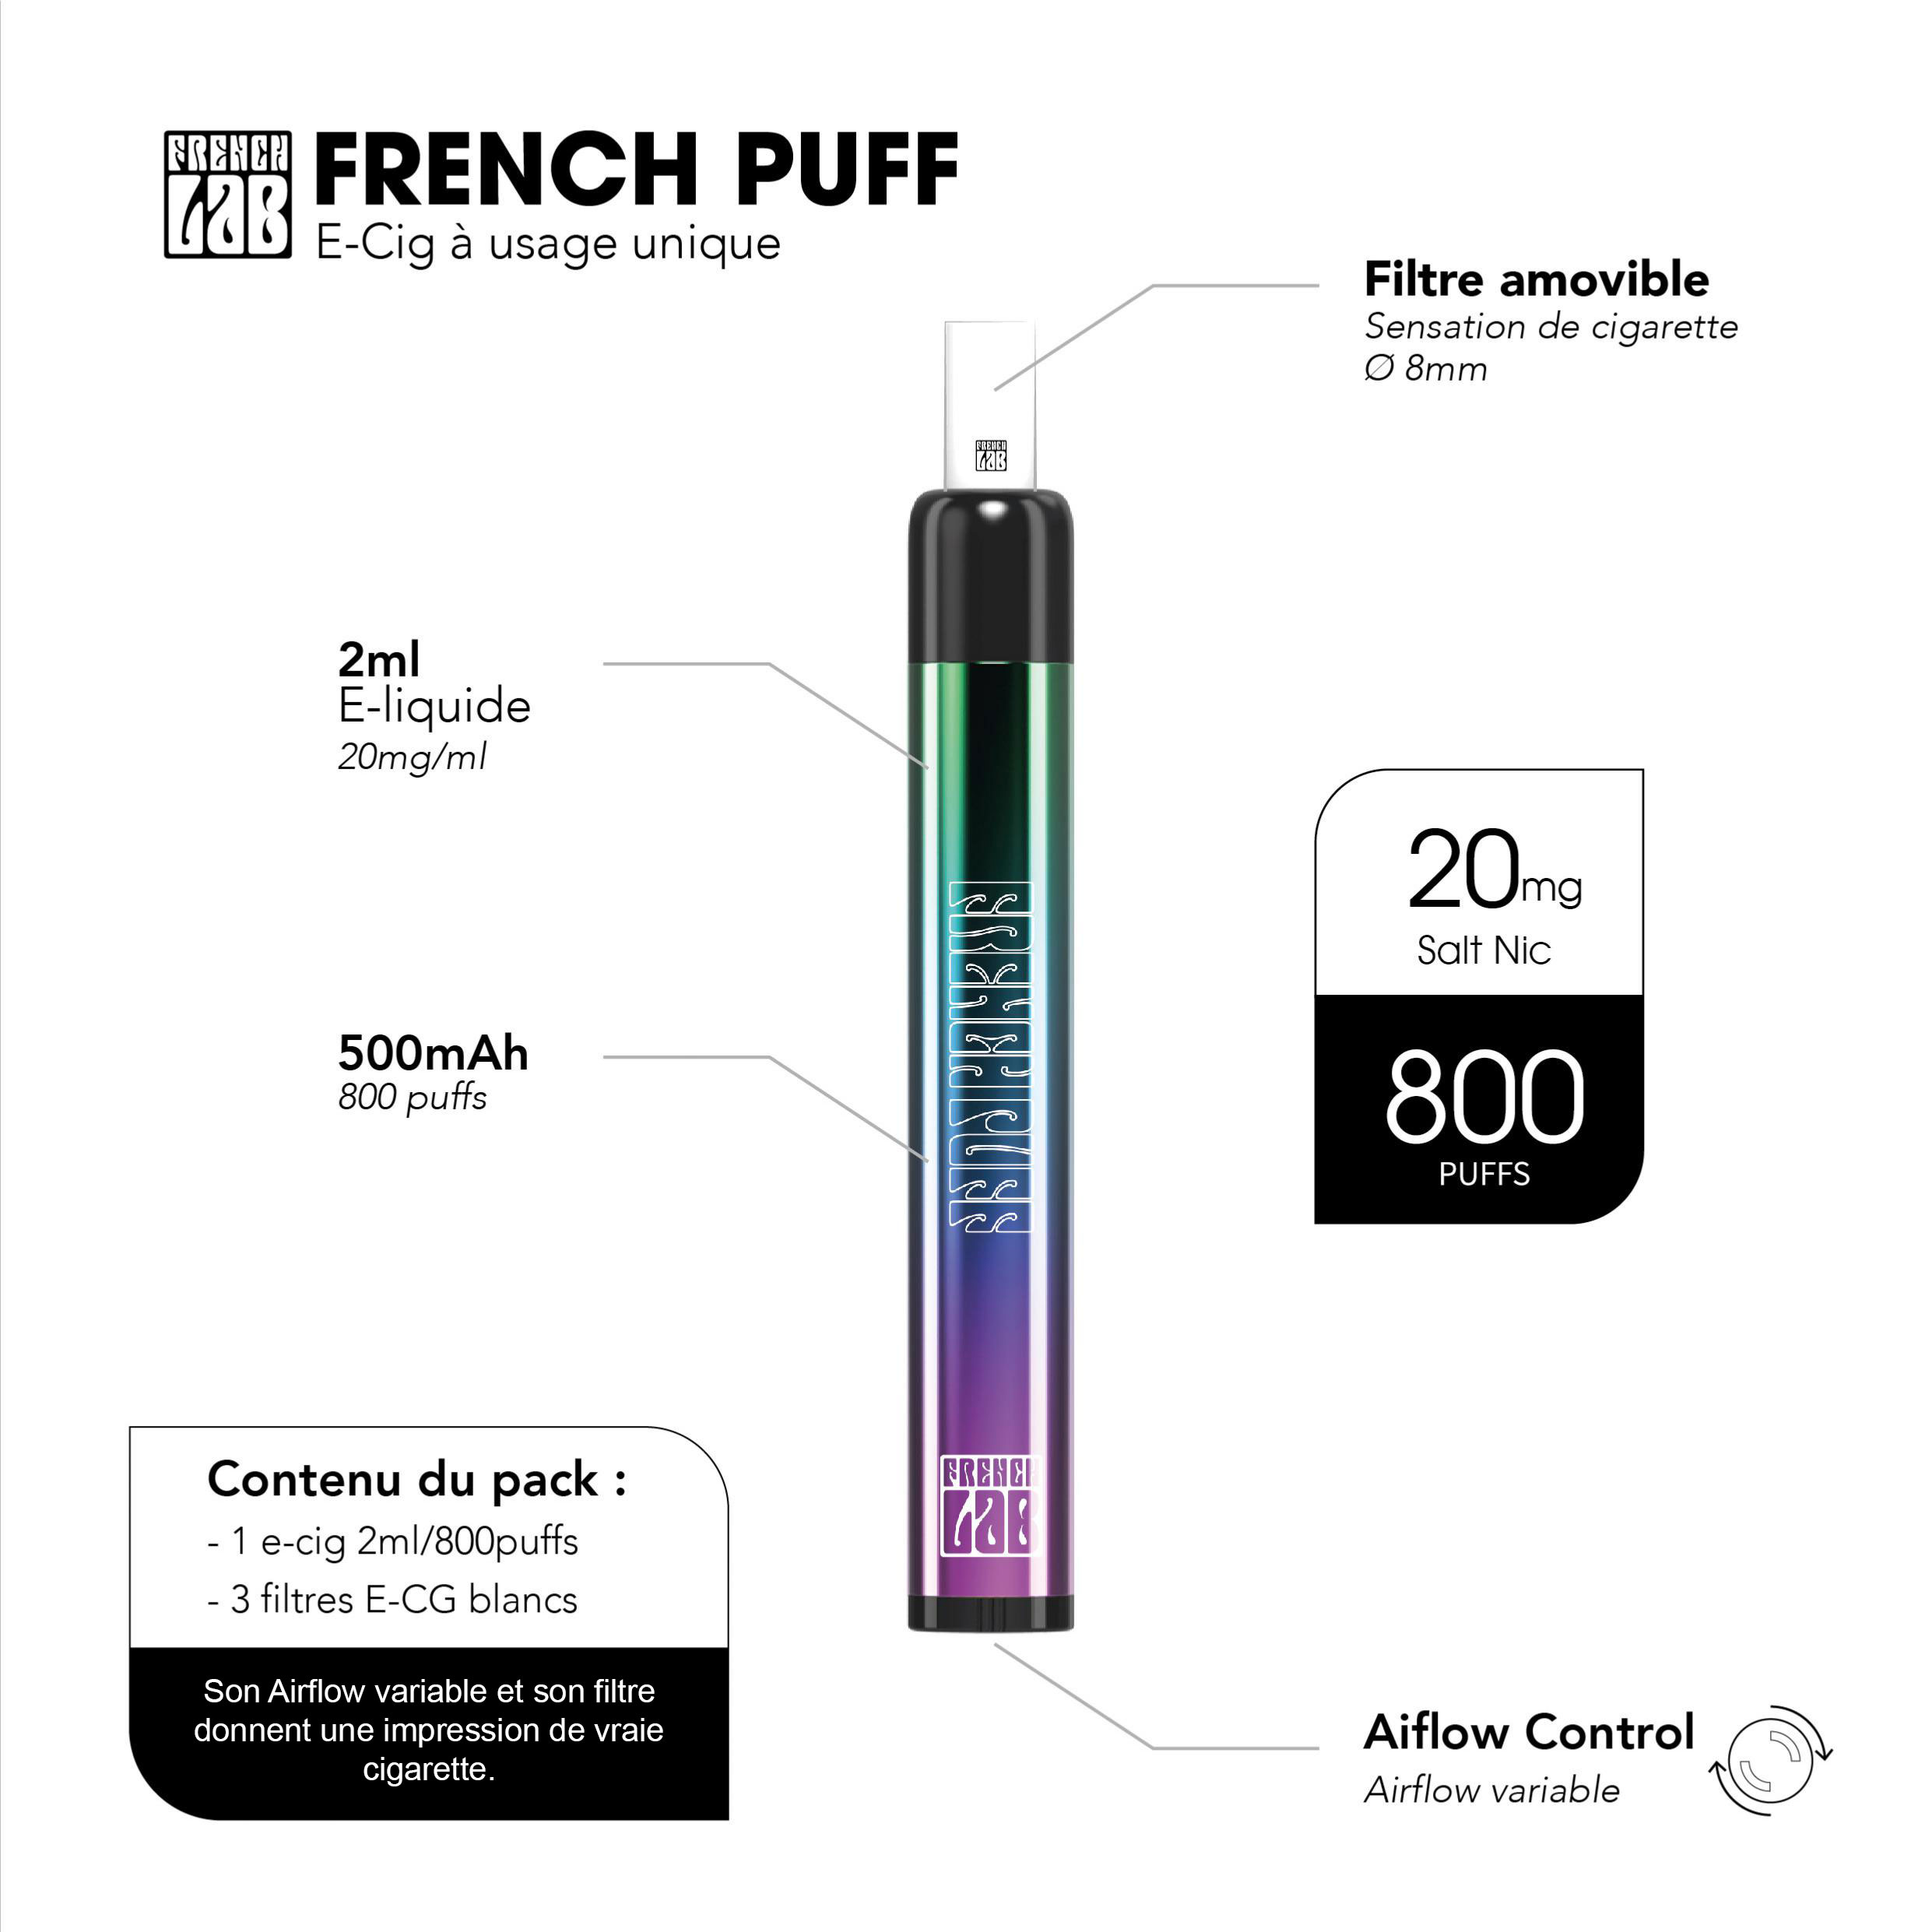 800 bouffÃ©es, Ã©quivalent Ã  5 paquets de cigarettes classiques sur la French Puff Blond Tobacco